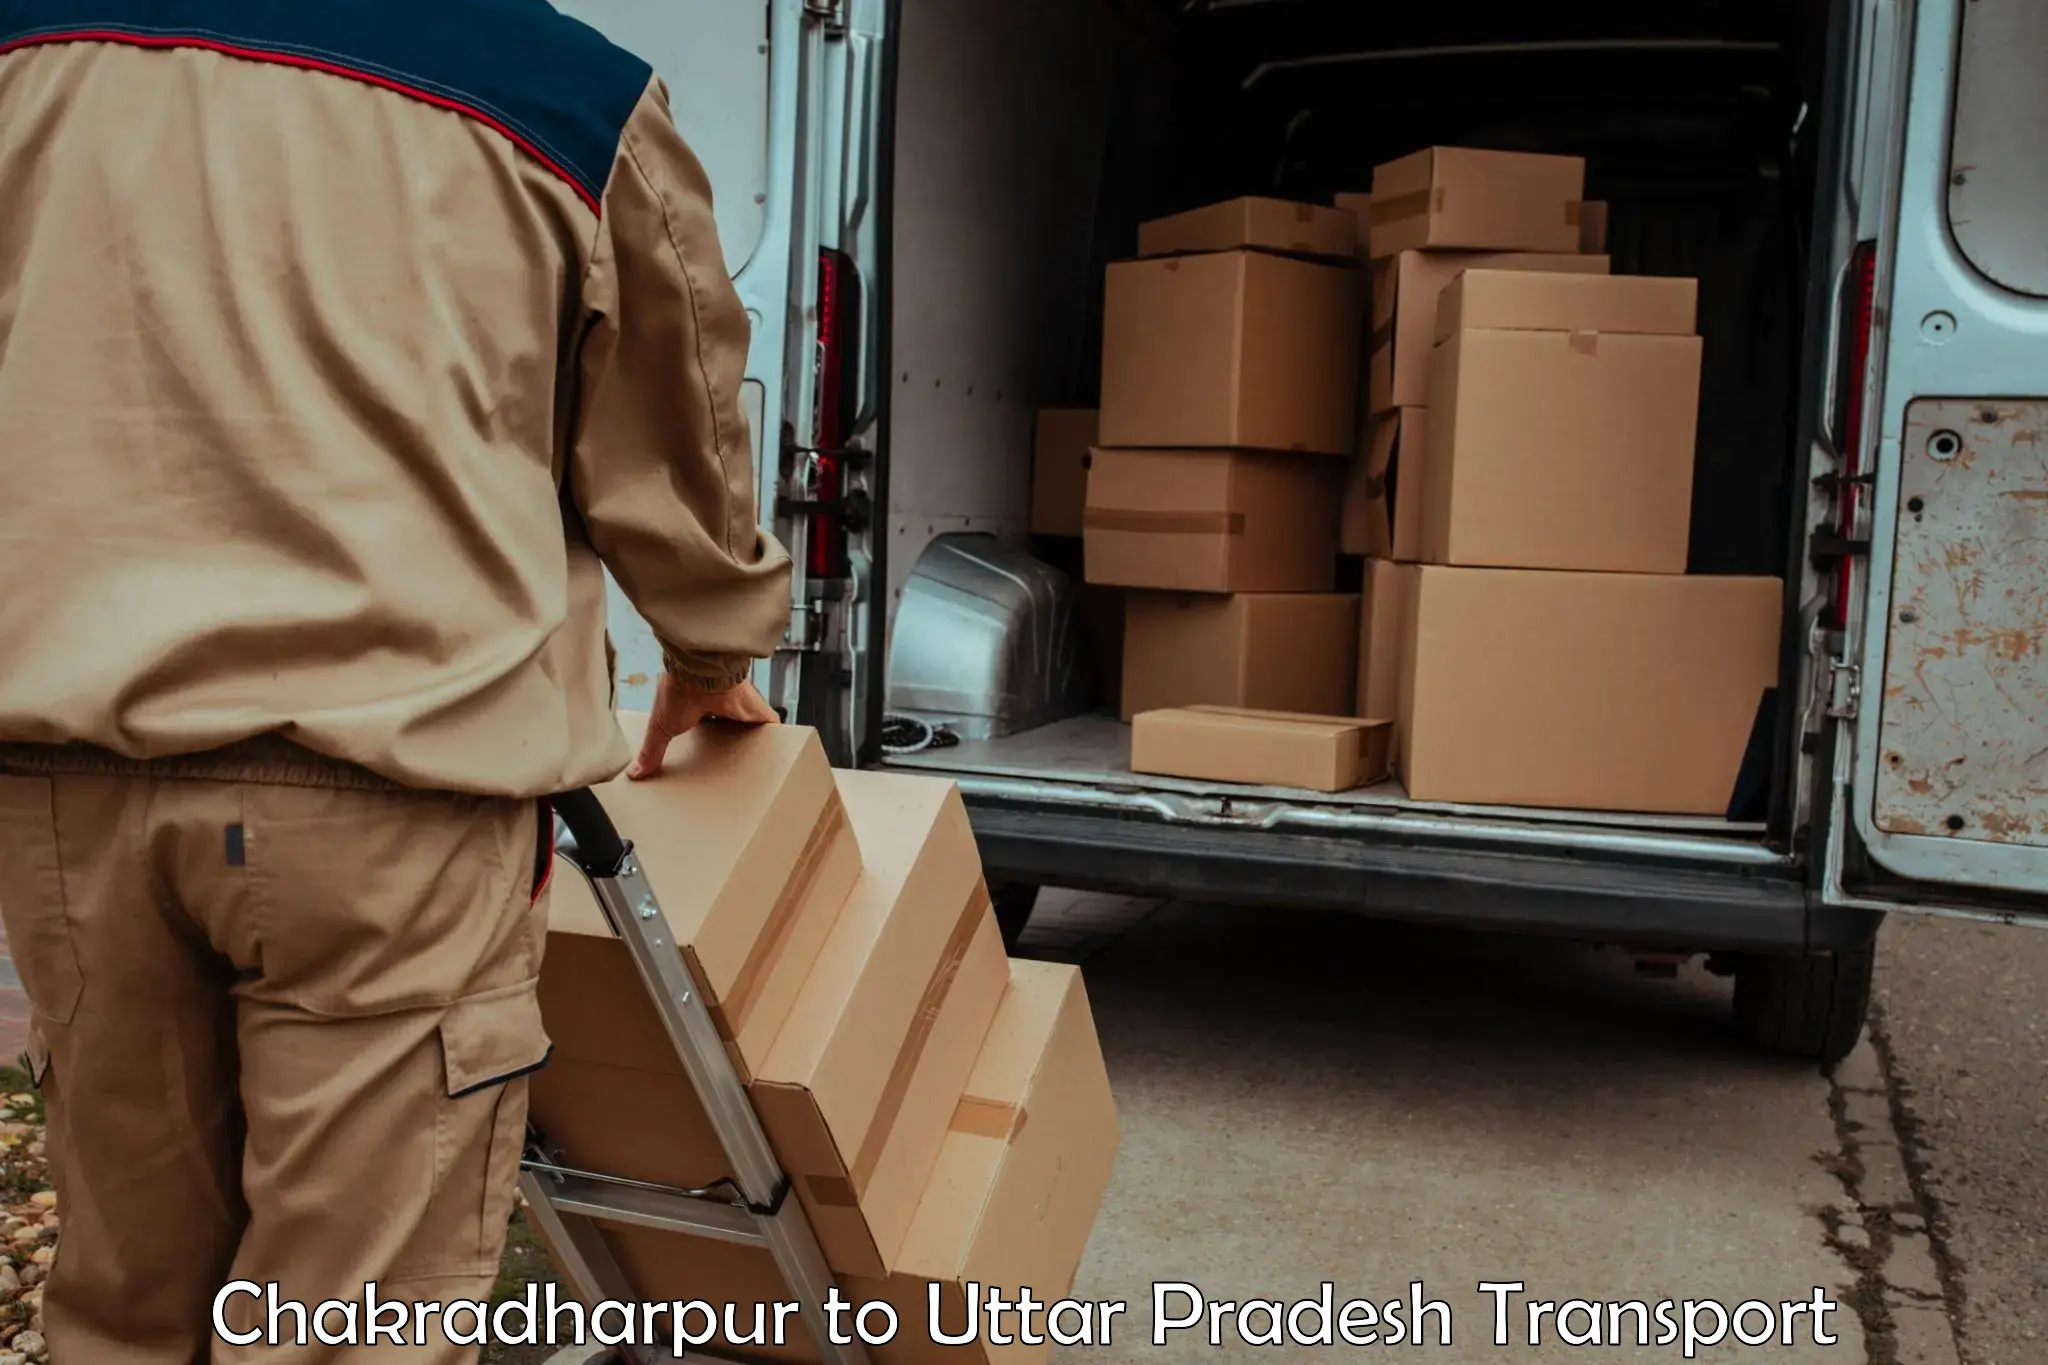 Container transport service Chakradharpur to Mawana